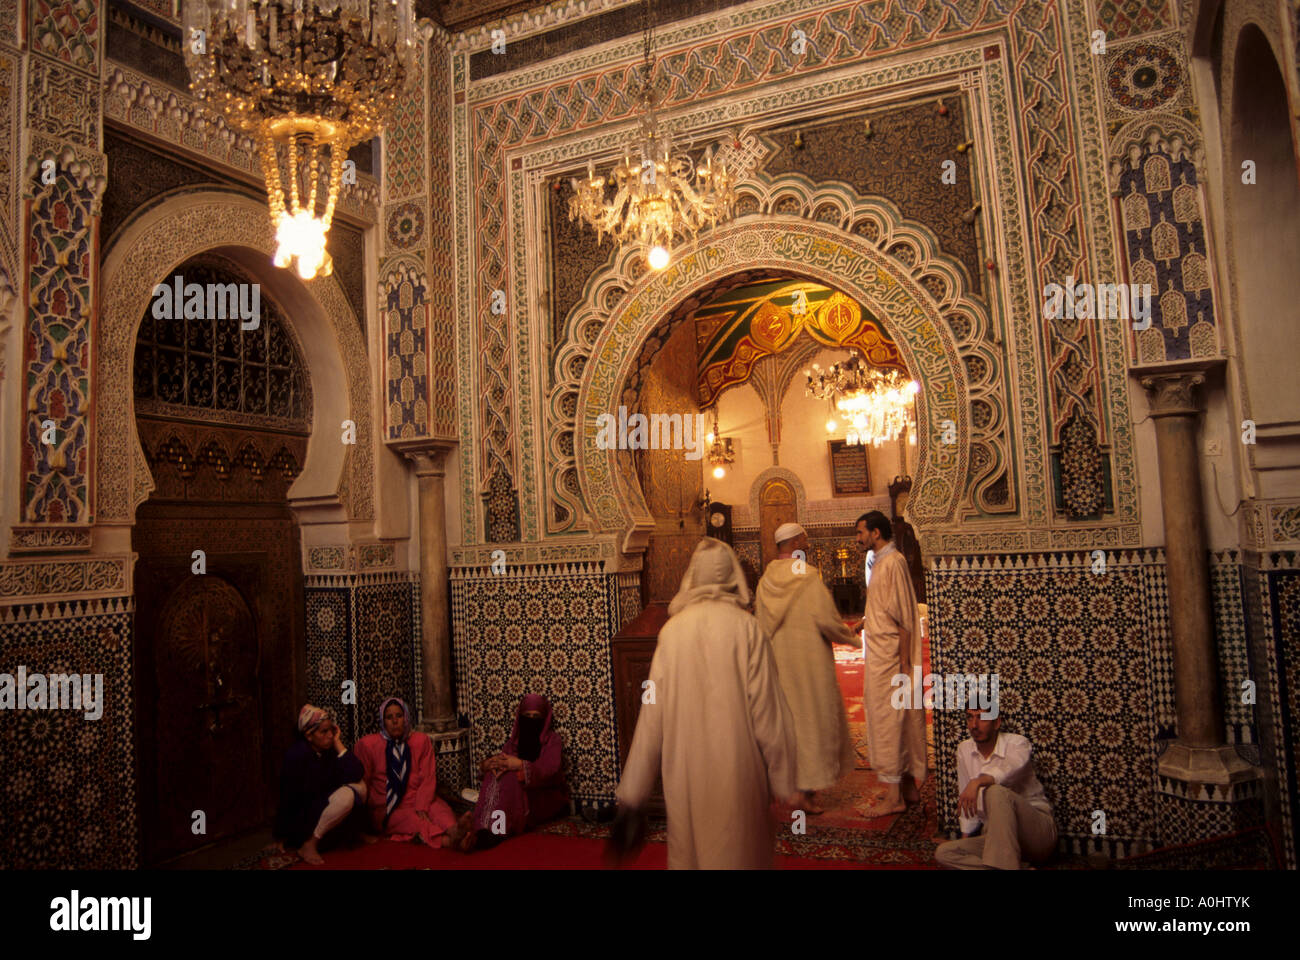 Fes Medina Marokko Moschee muslimische islamische Religion Interieur Stockfoto